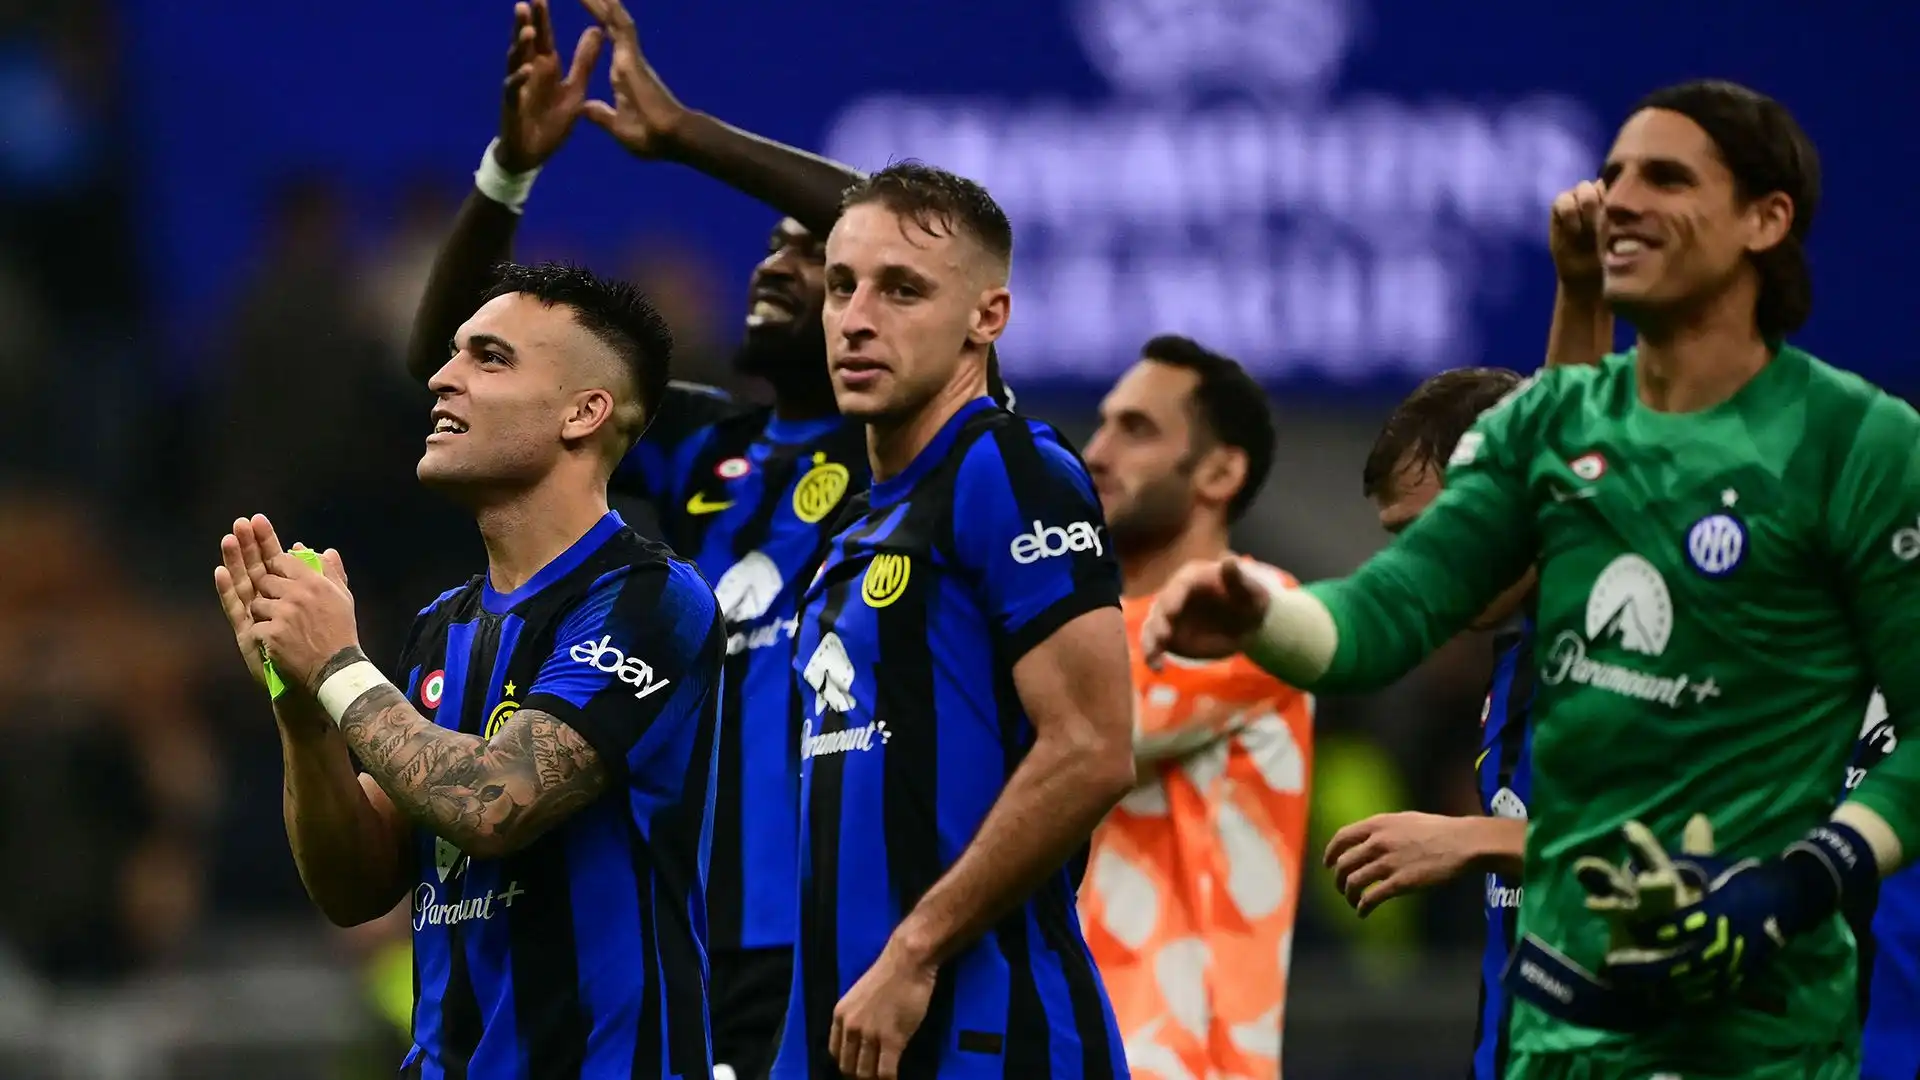 Nonostante questo, l'Inter è riuscita a mantenere il vantaggio fino al termine della partita, conquistando una vittoria importante.